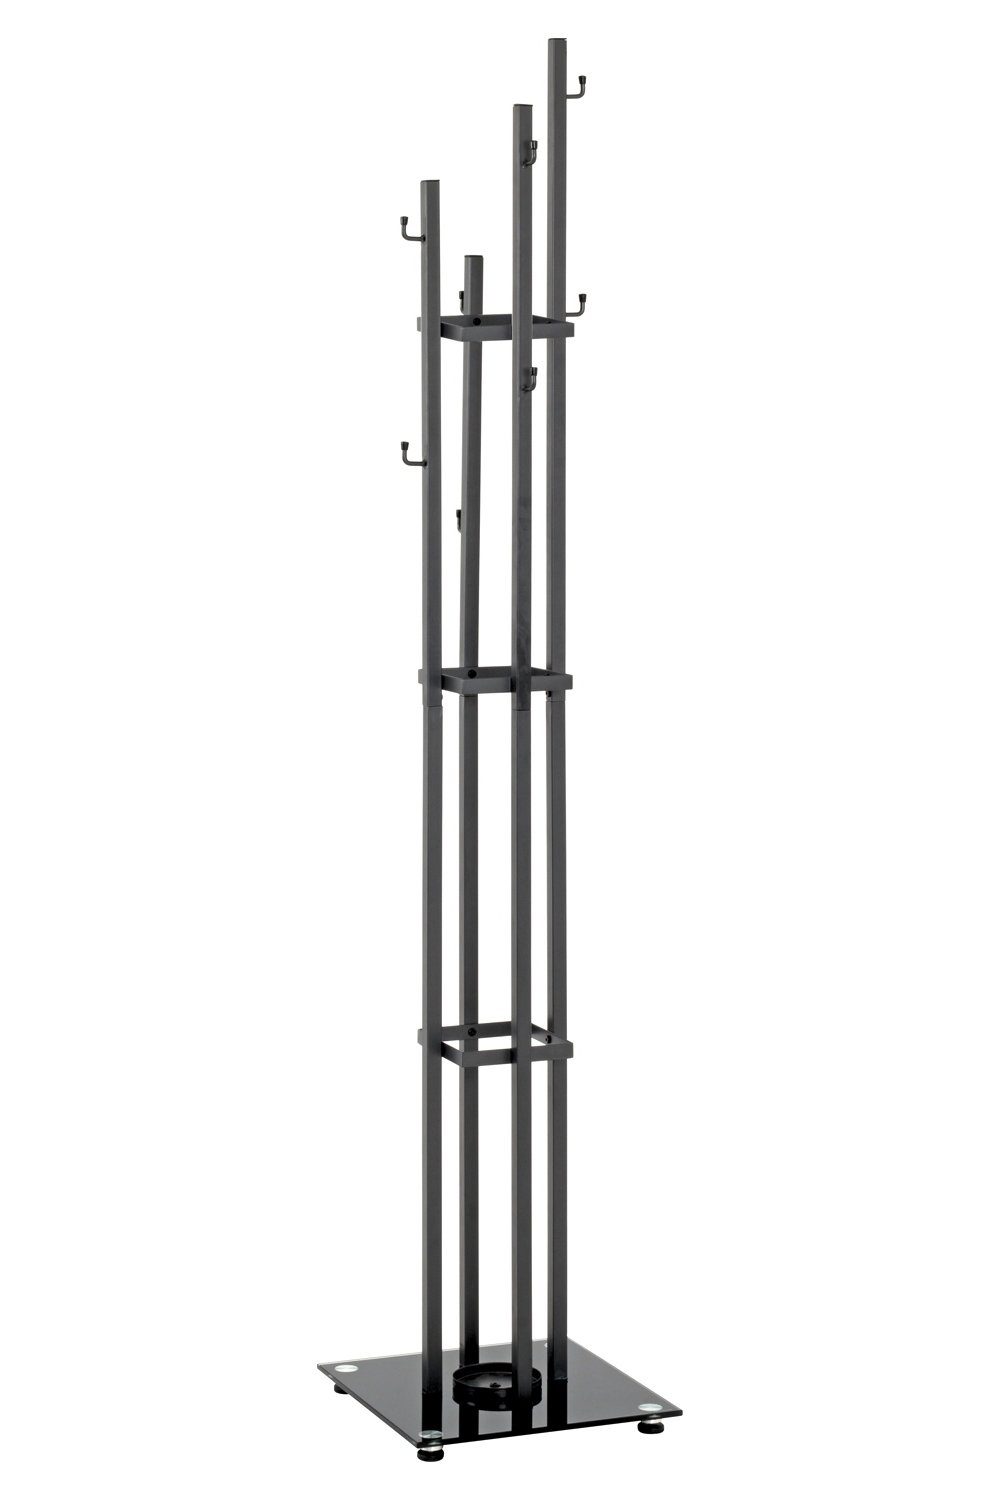 HAKU Вішалки LEANDER, B 35 x H 183 cm, Anthrazit, Schwarz, Glas, Stahl, mit Schirmhalter